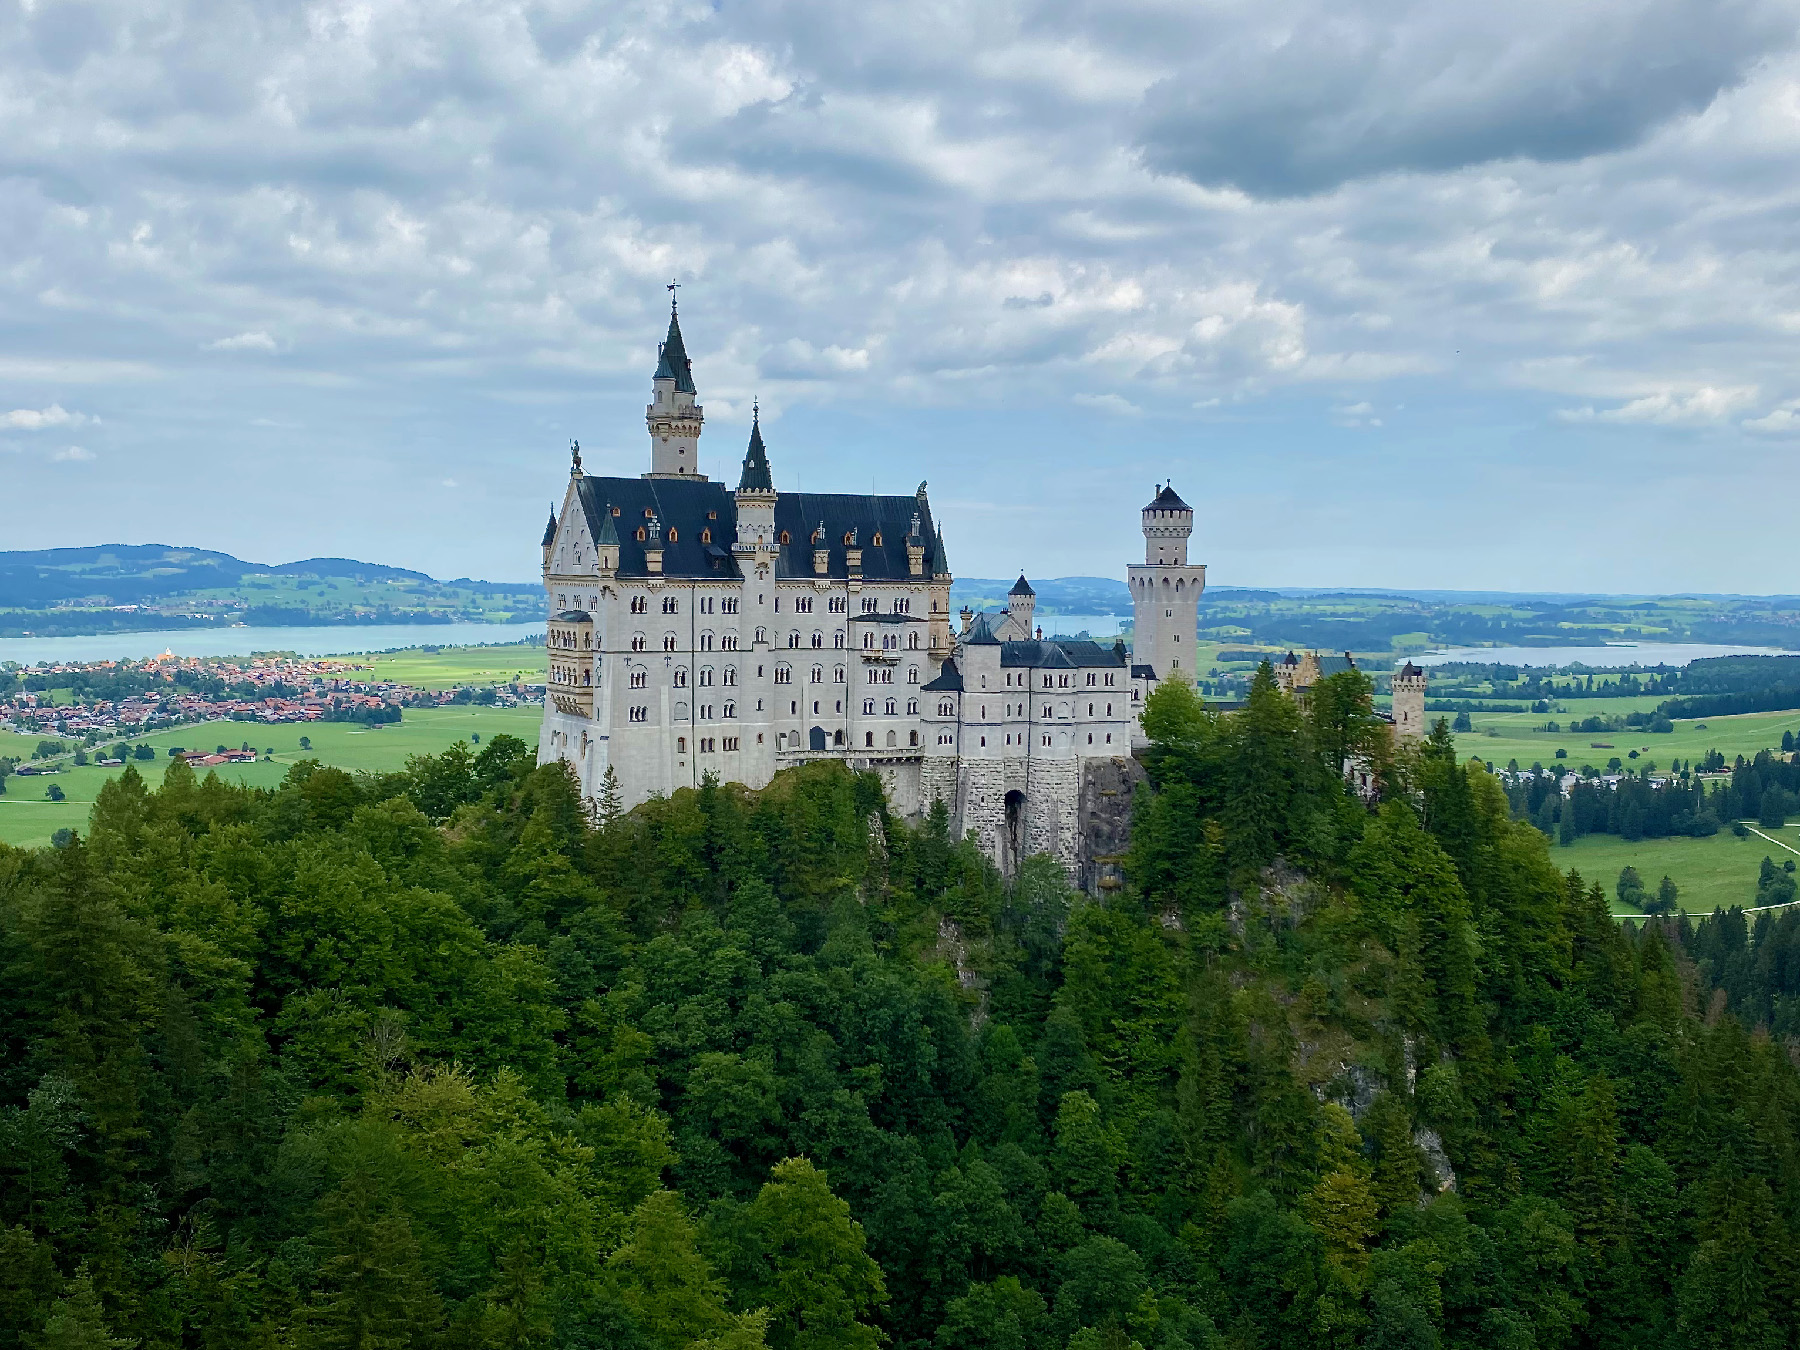 Lâu đài Neuschwanstein nằm gần thành phố Munich, Đức, là một trong những địa danh nổi tiếng nhất ở châu Âu. (Ảnh: Đăng dưới sự cho phép của tác giả Margot Black)